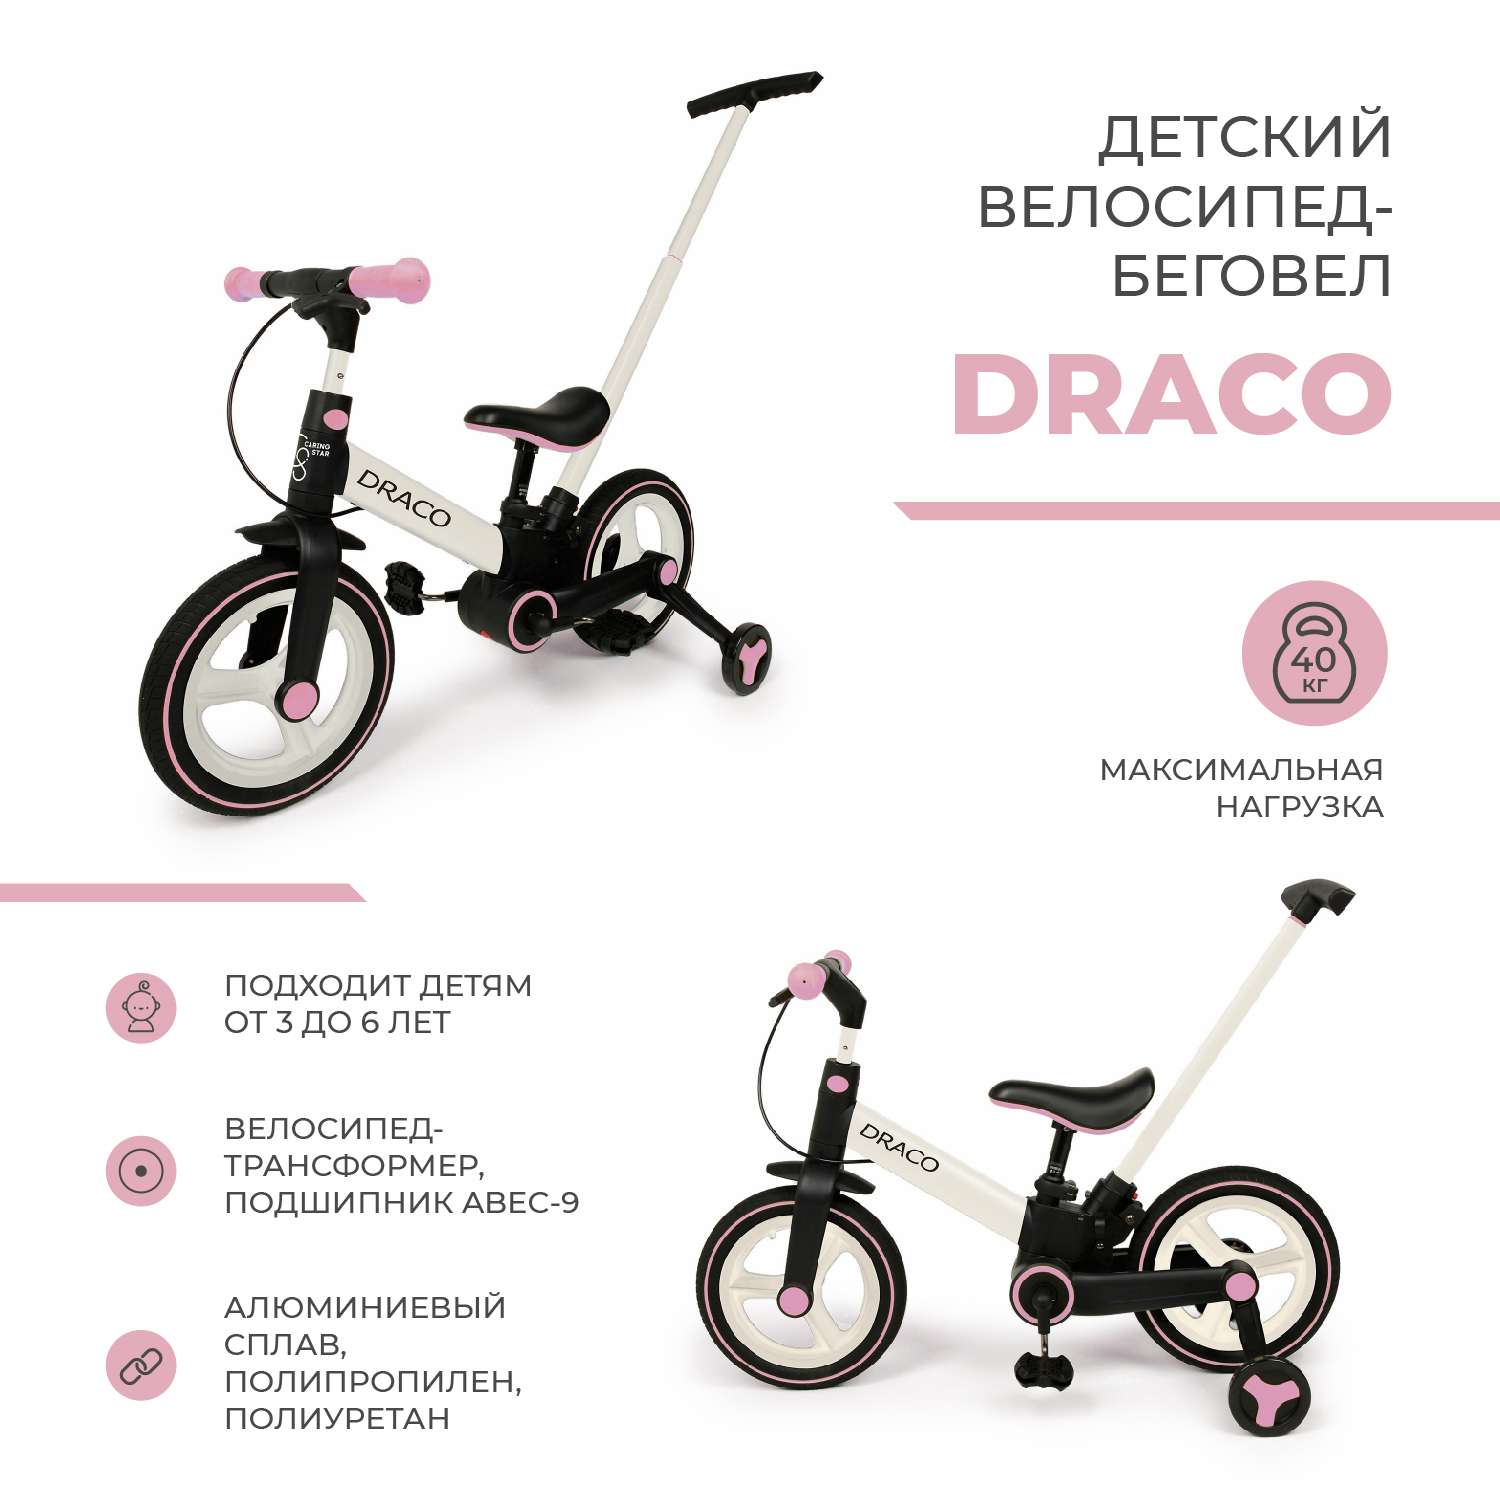 Велосипед двухколесный CARING STAR DRACO - фото 2